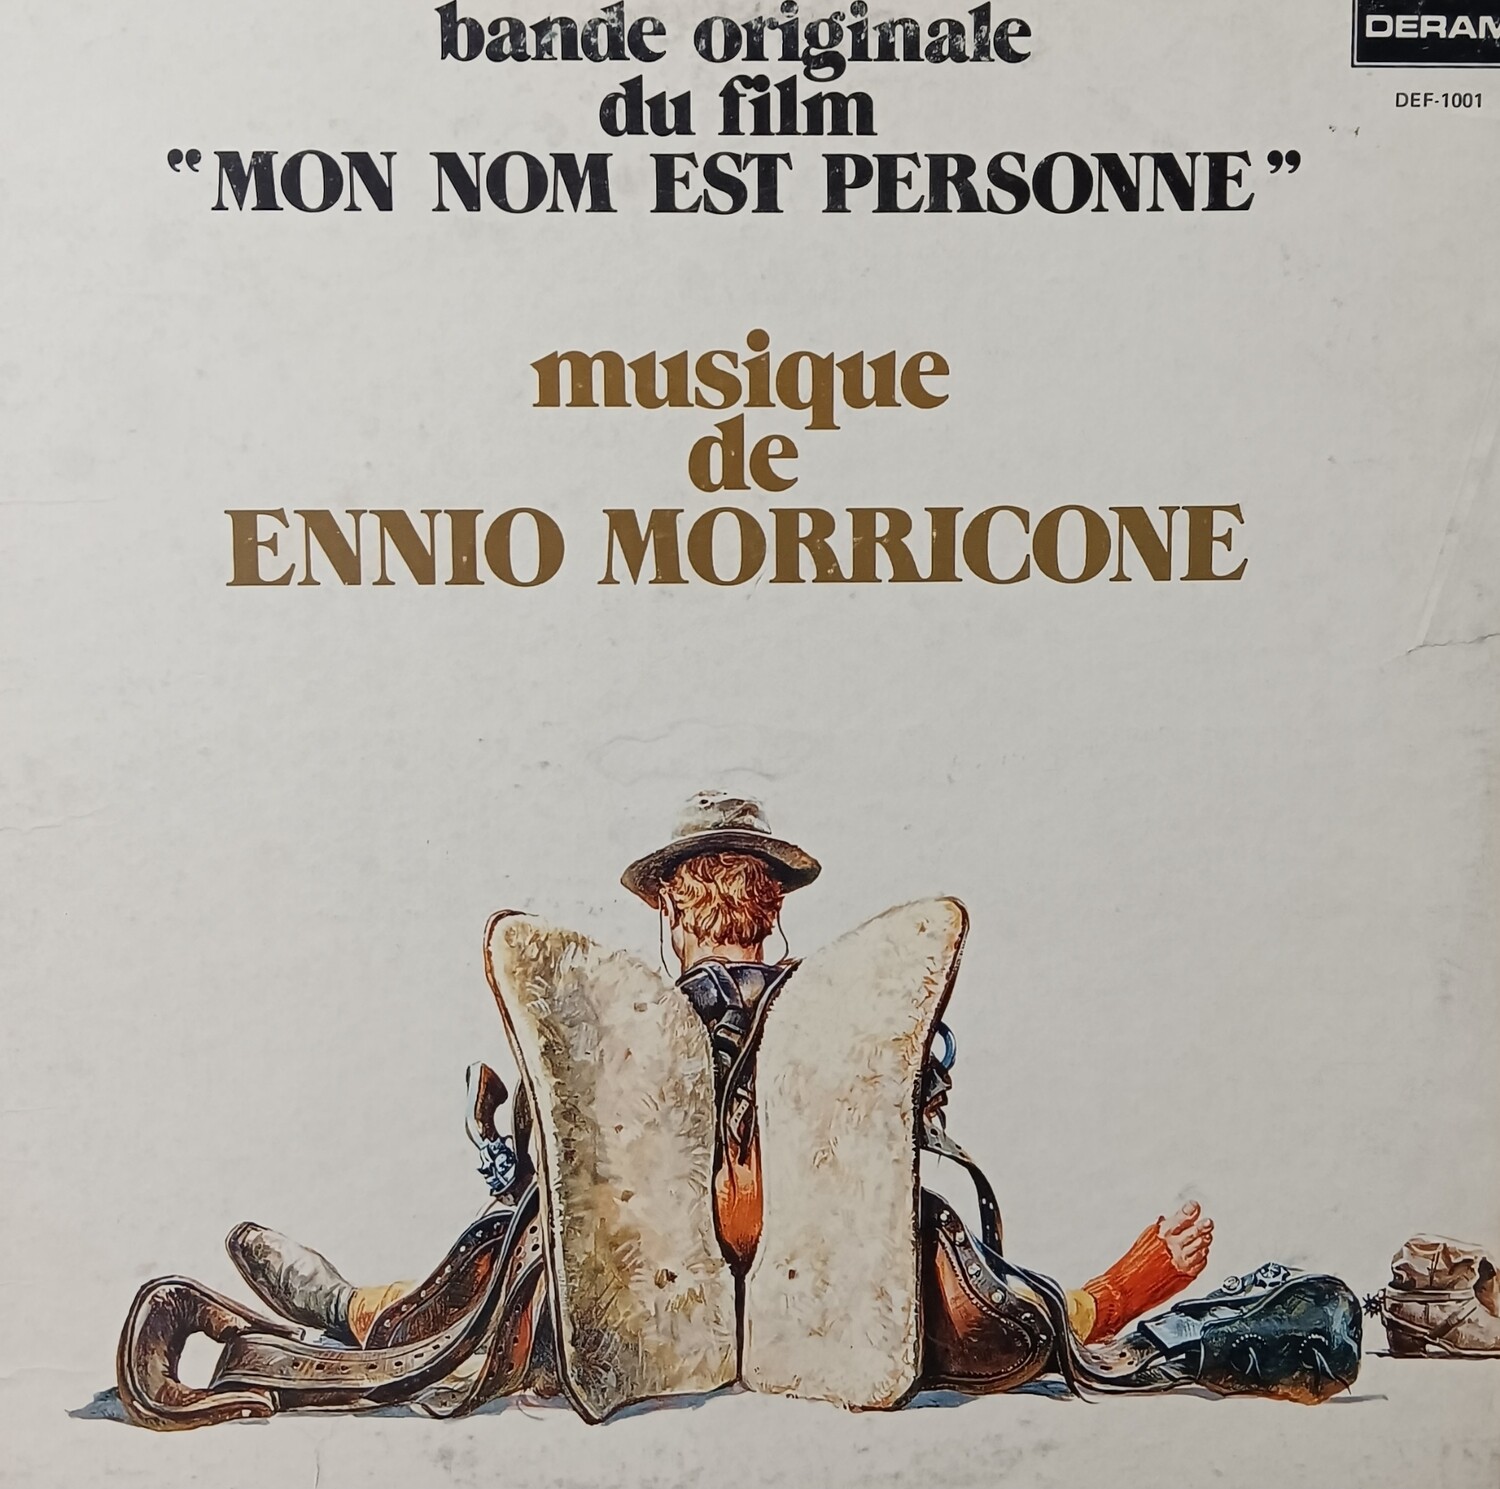 ENNIO MORRICONE - Mon nom est personne